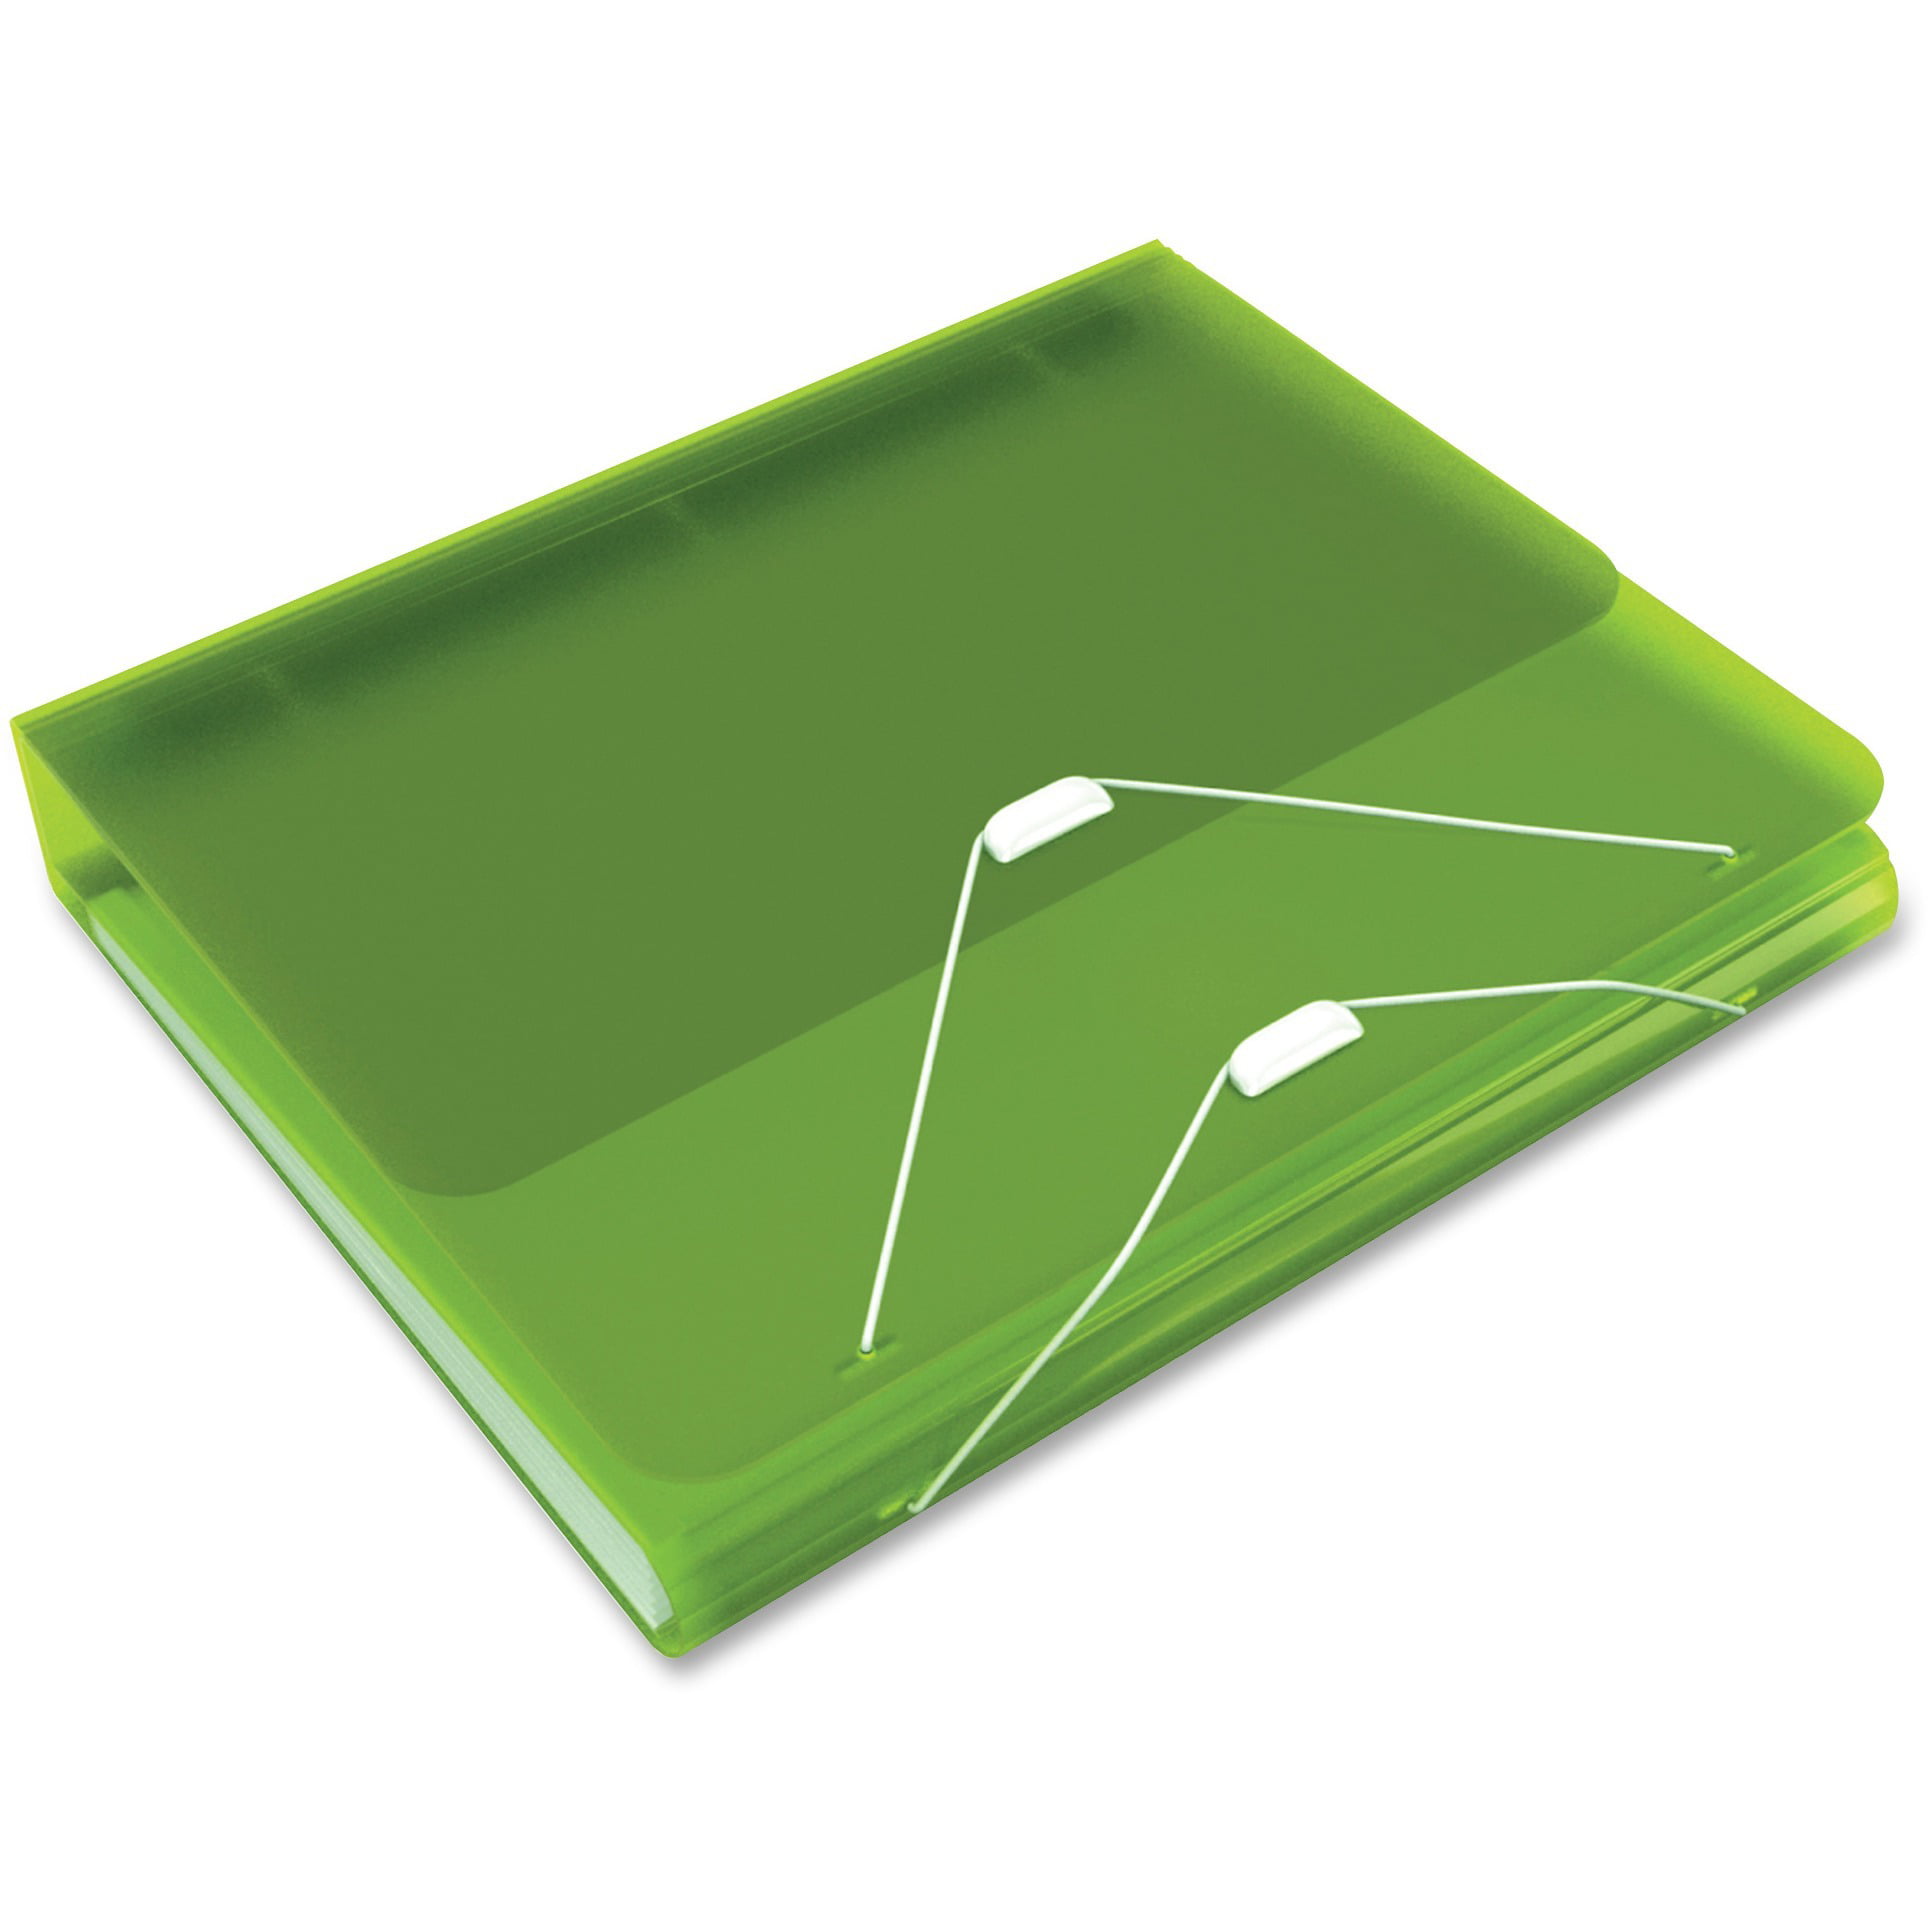 1" Binder Samsill DUO 2-in-1 Organizer Expanding File-Green Binder 